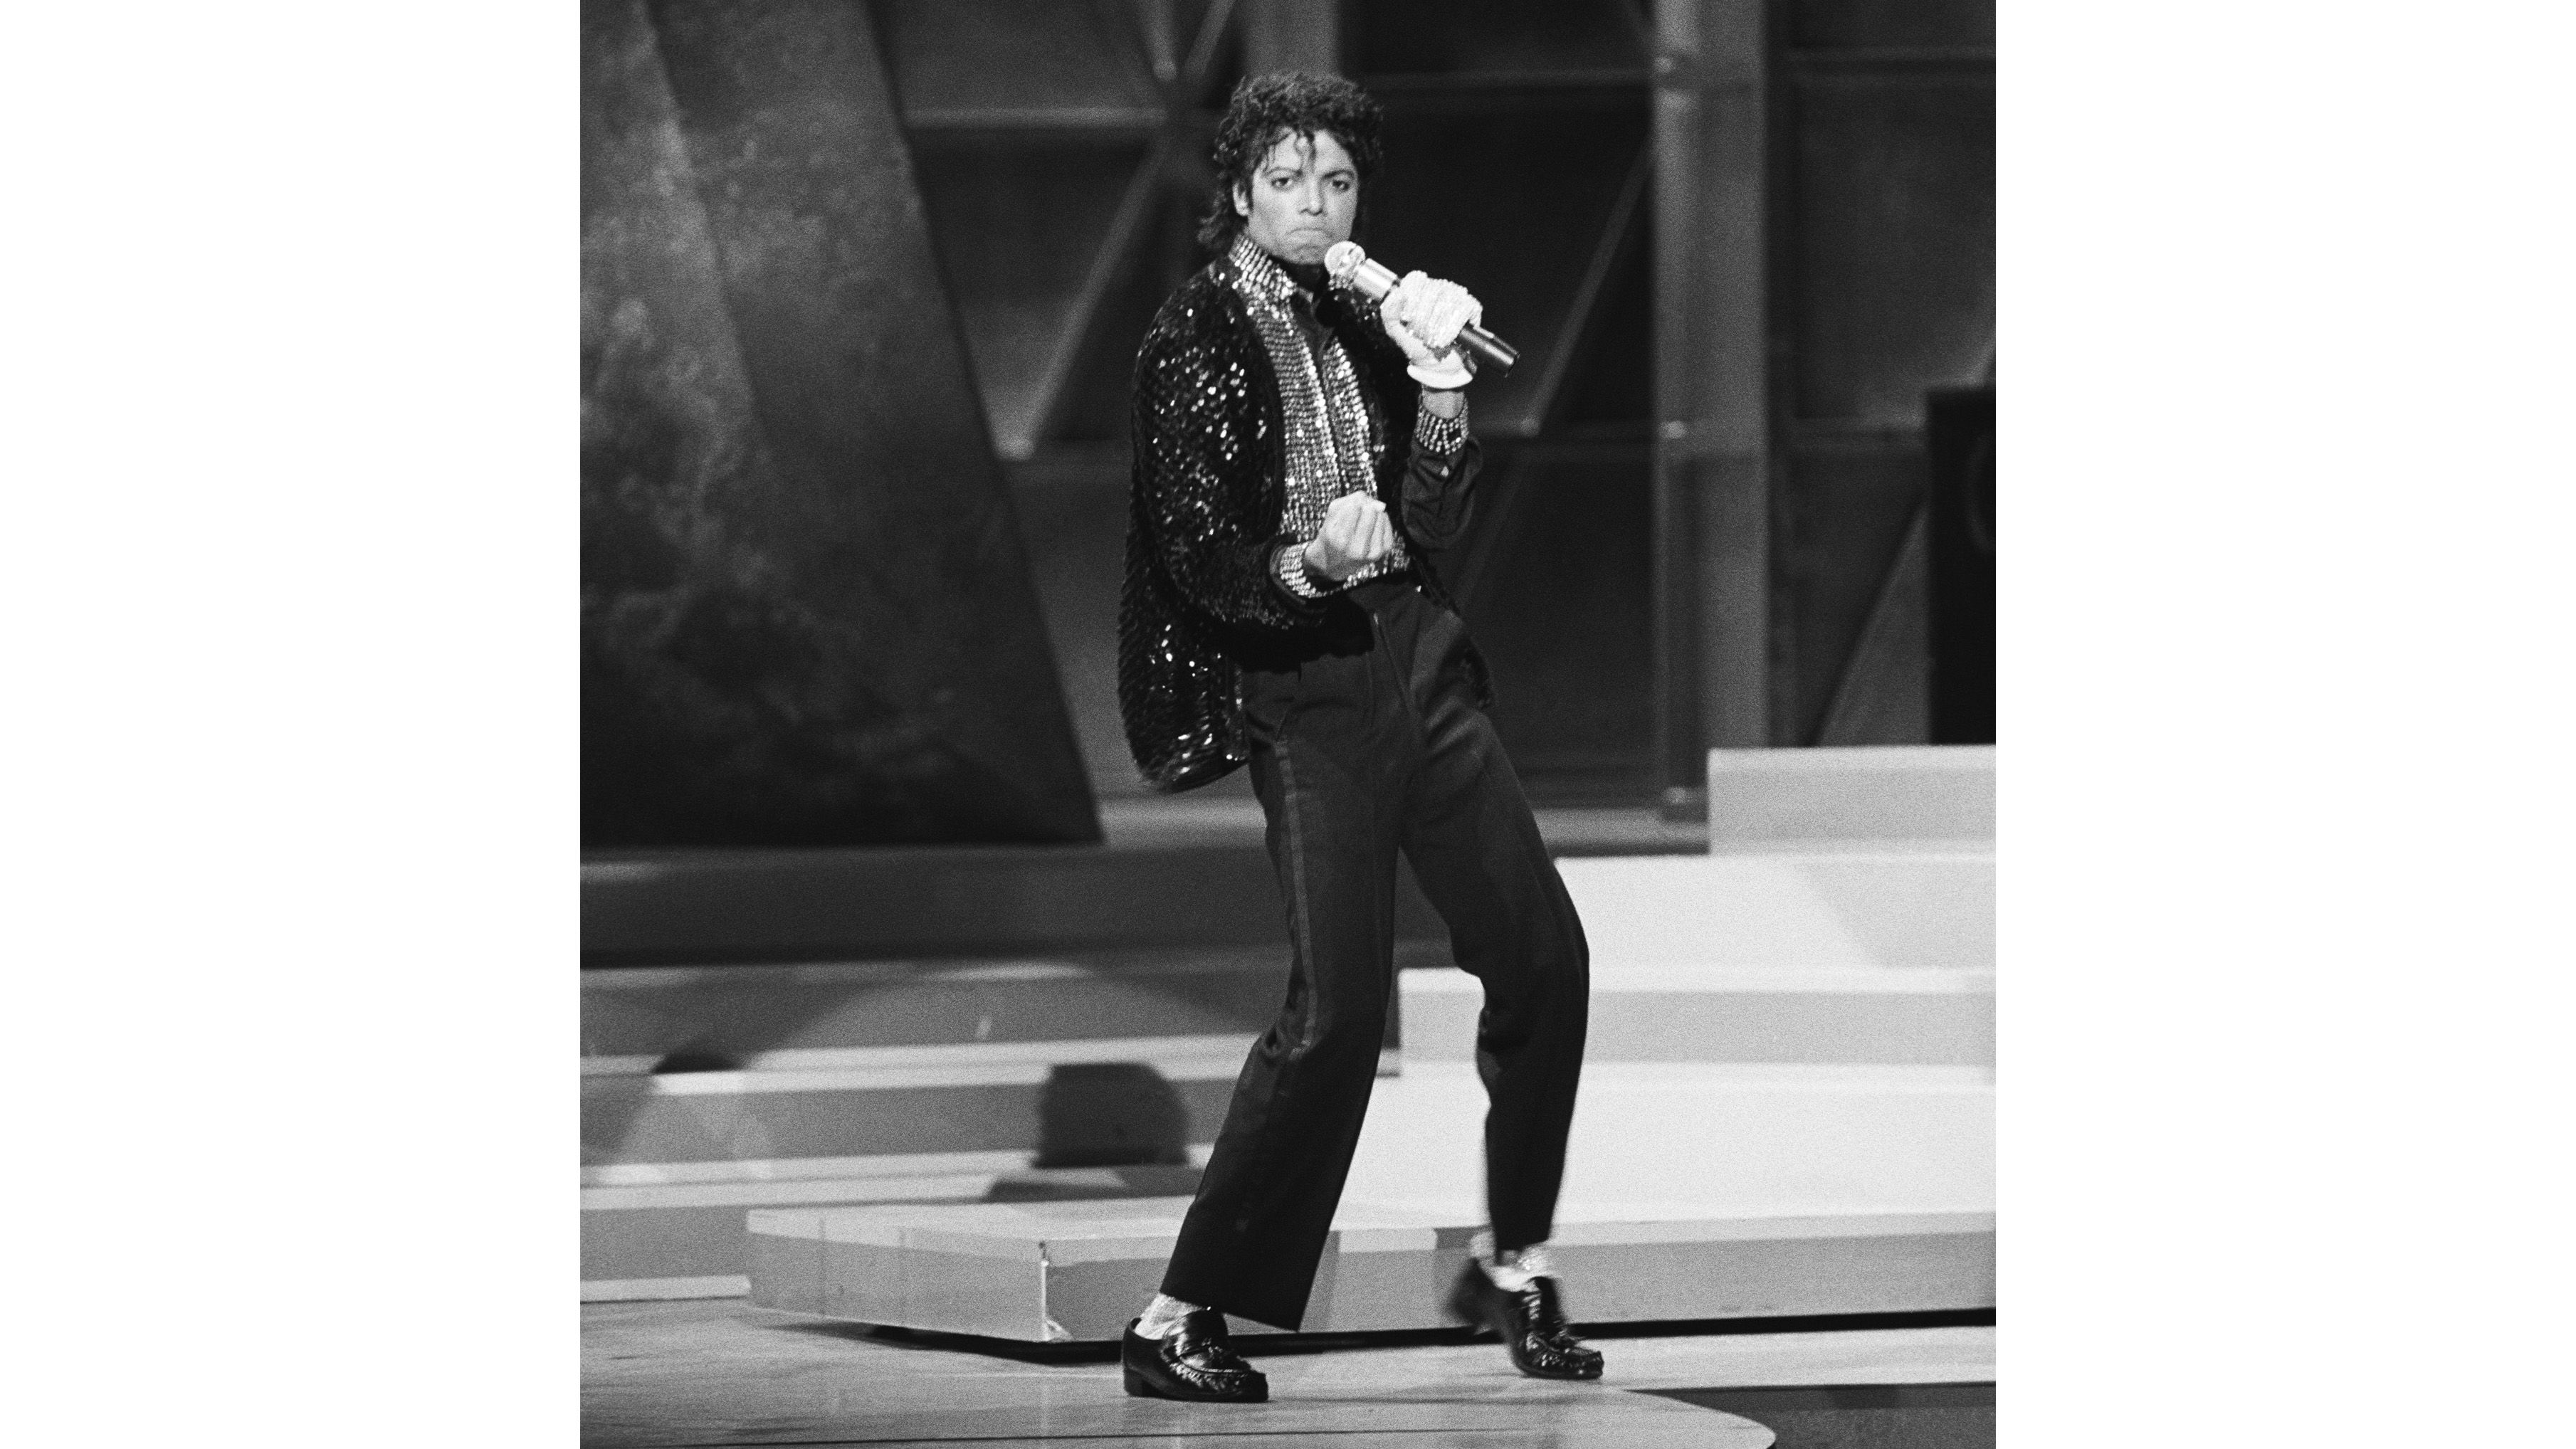 Michael Jackson Billie Jean Shoes